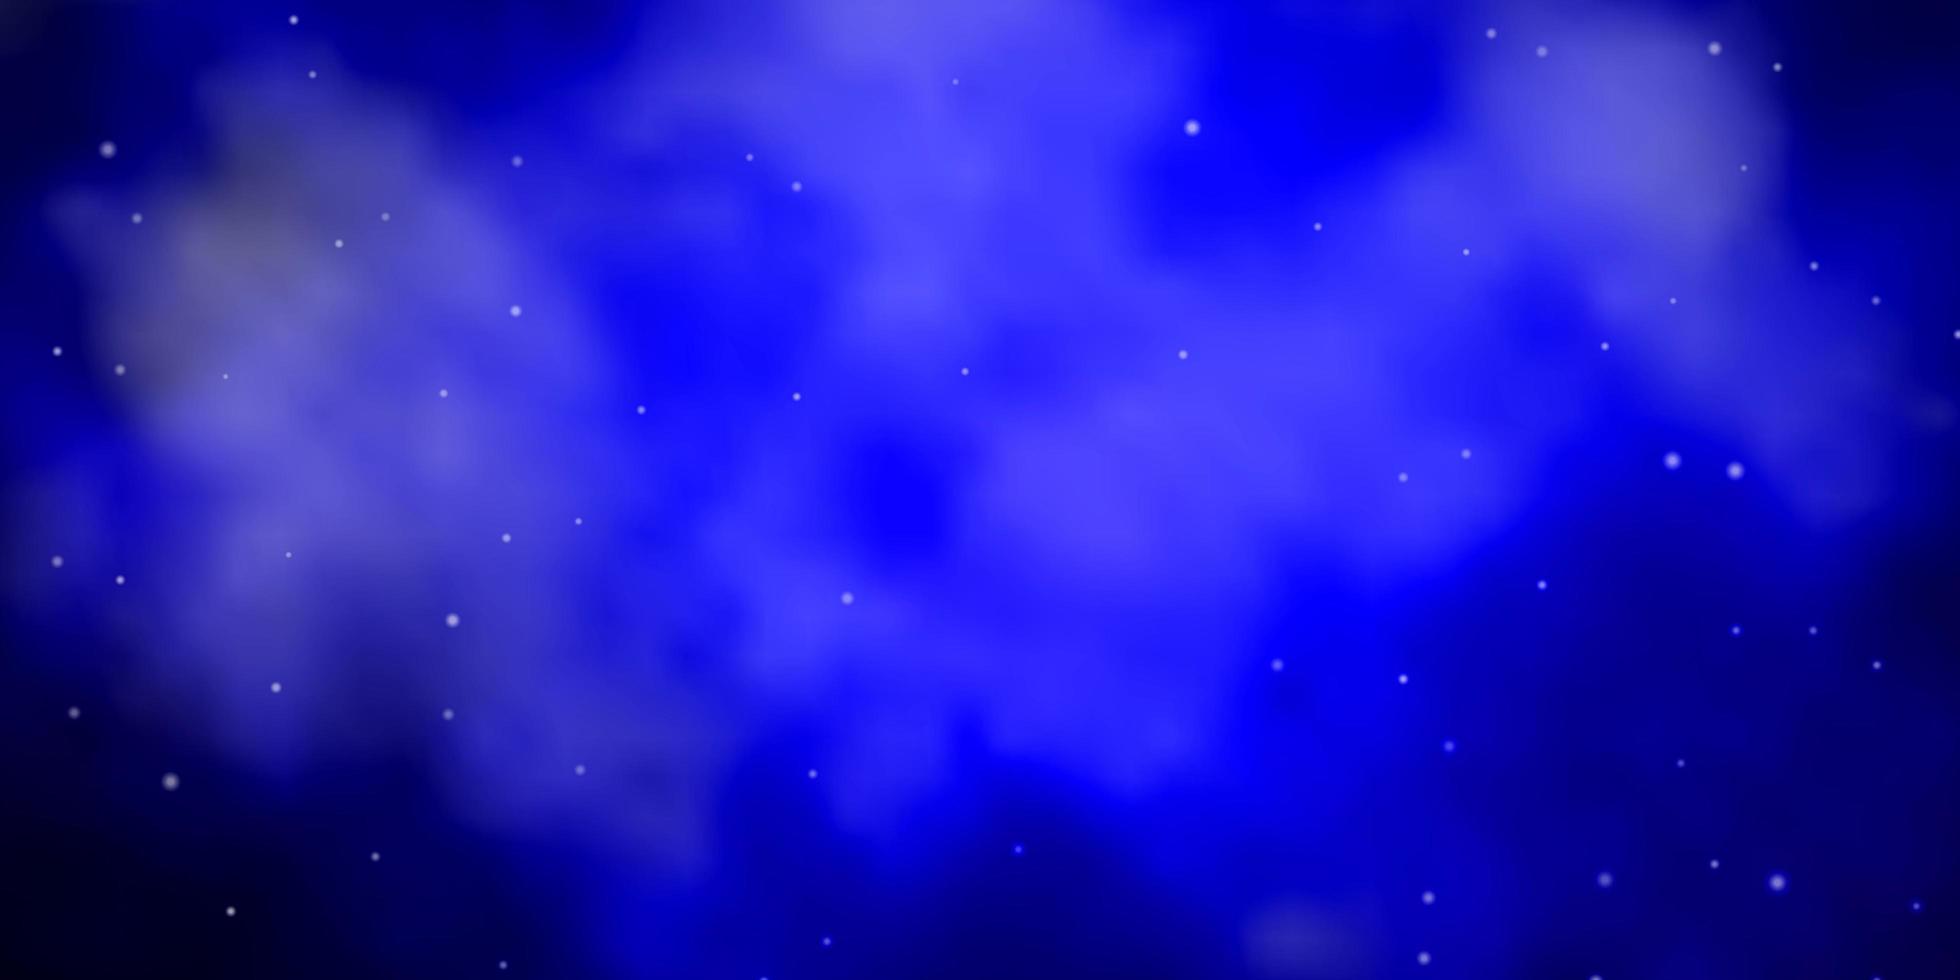 layout de vetor de azul escuro com estrelas brilhantes. ilustração colorida brilhante com estrelas pequenas e grandes. padrão para sites, páginas de destino.